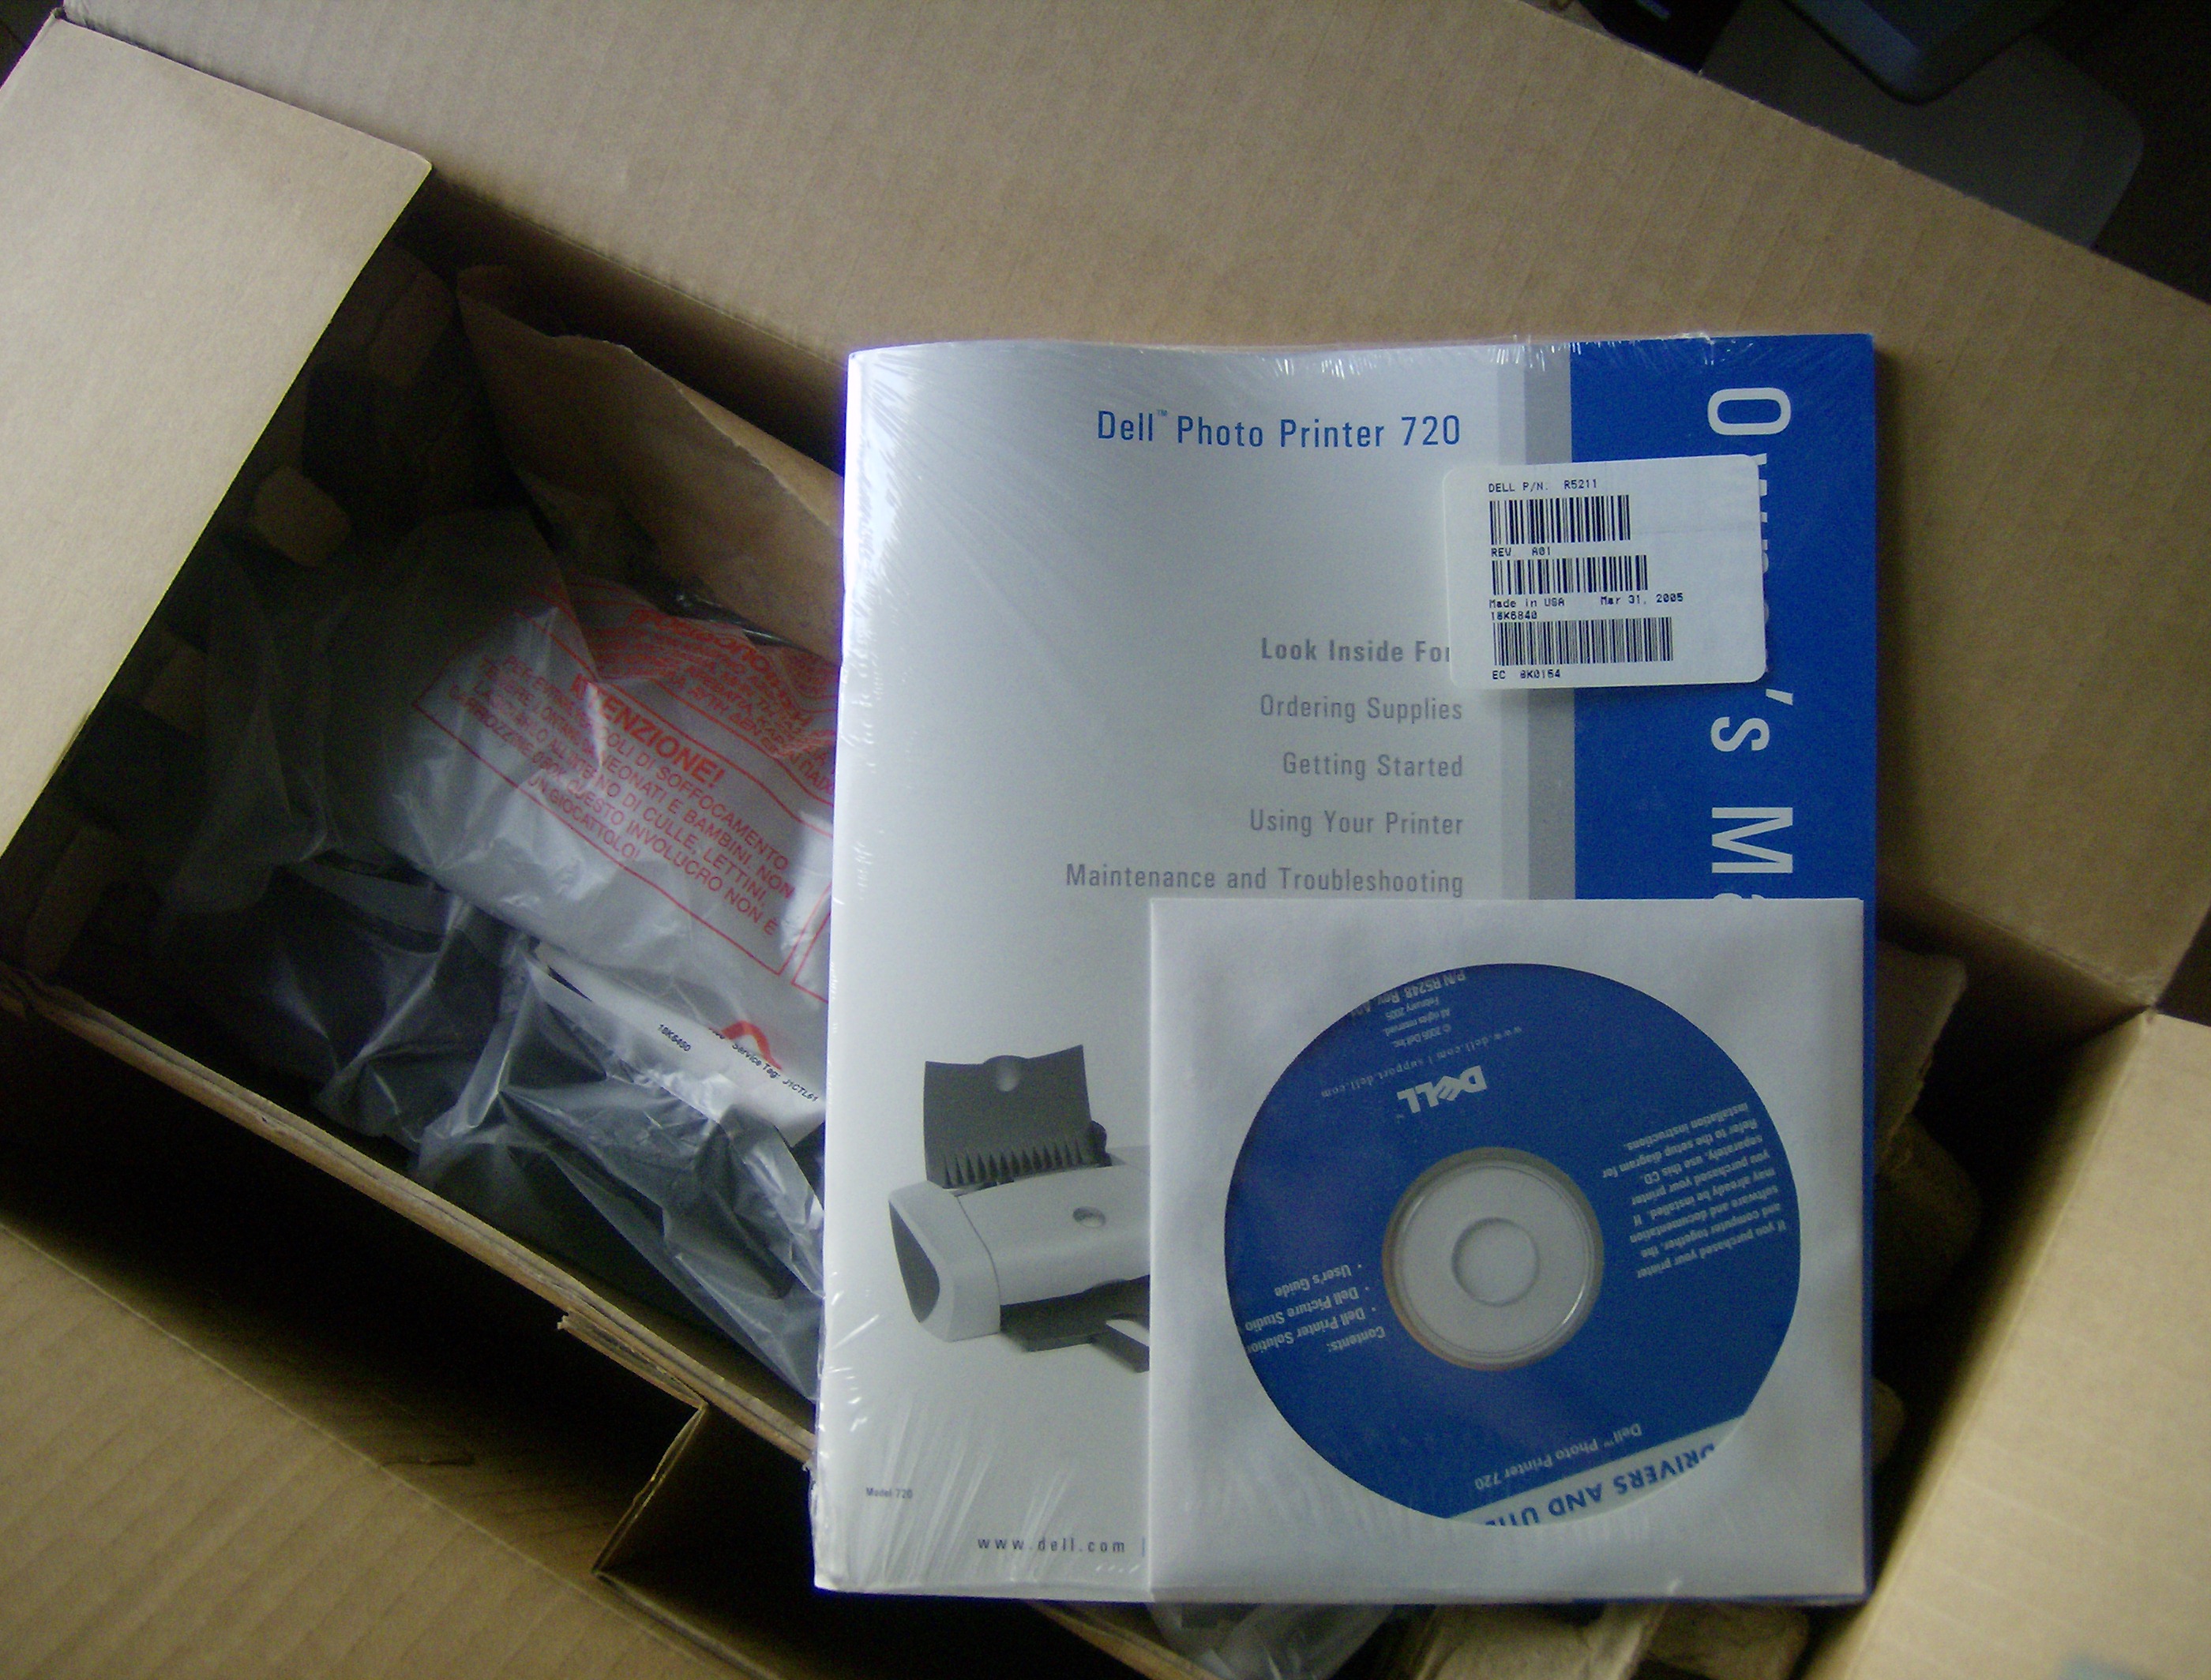 Dell Color Printer 720 - New in Box!